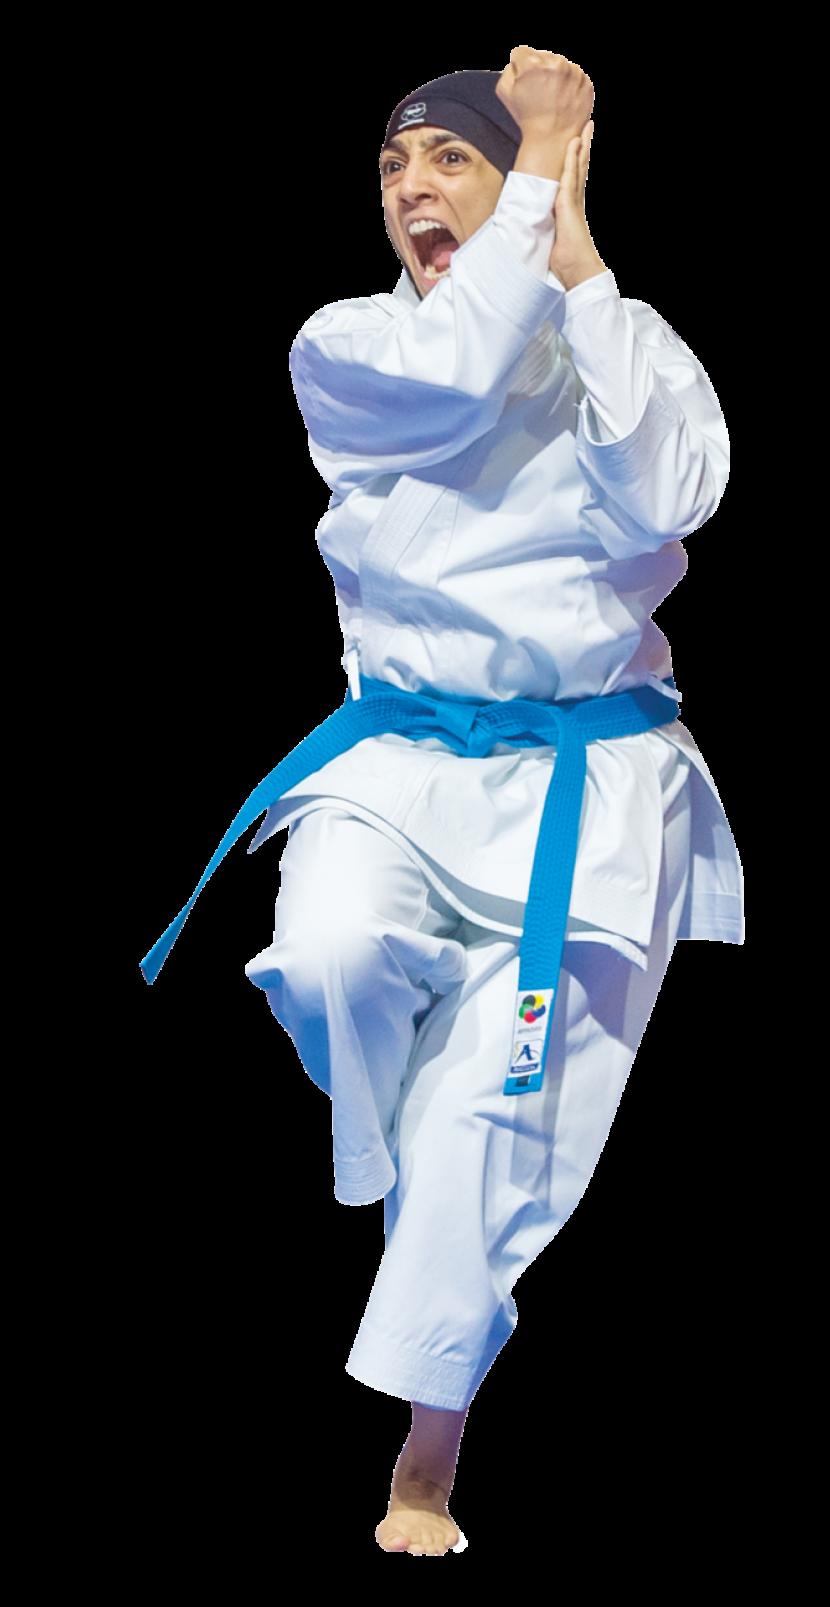 Nada Al Mashat, Wanita Arab Saudi Pertama yang Jadi Hakim Karate Internasional 